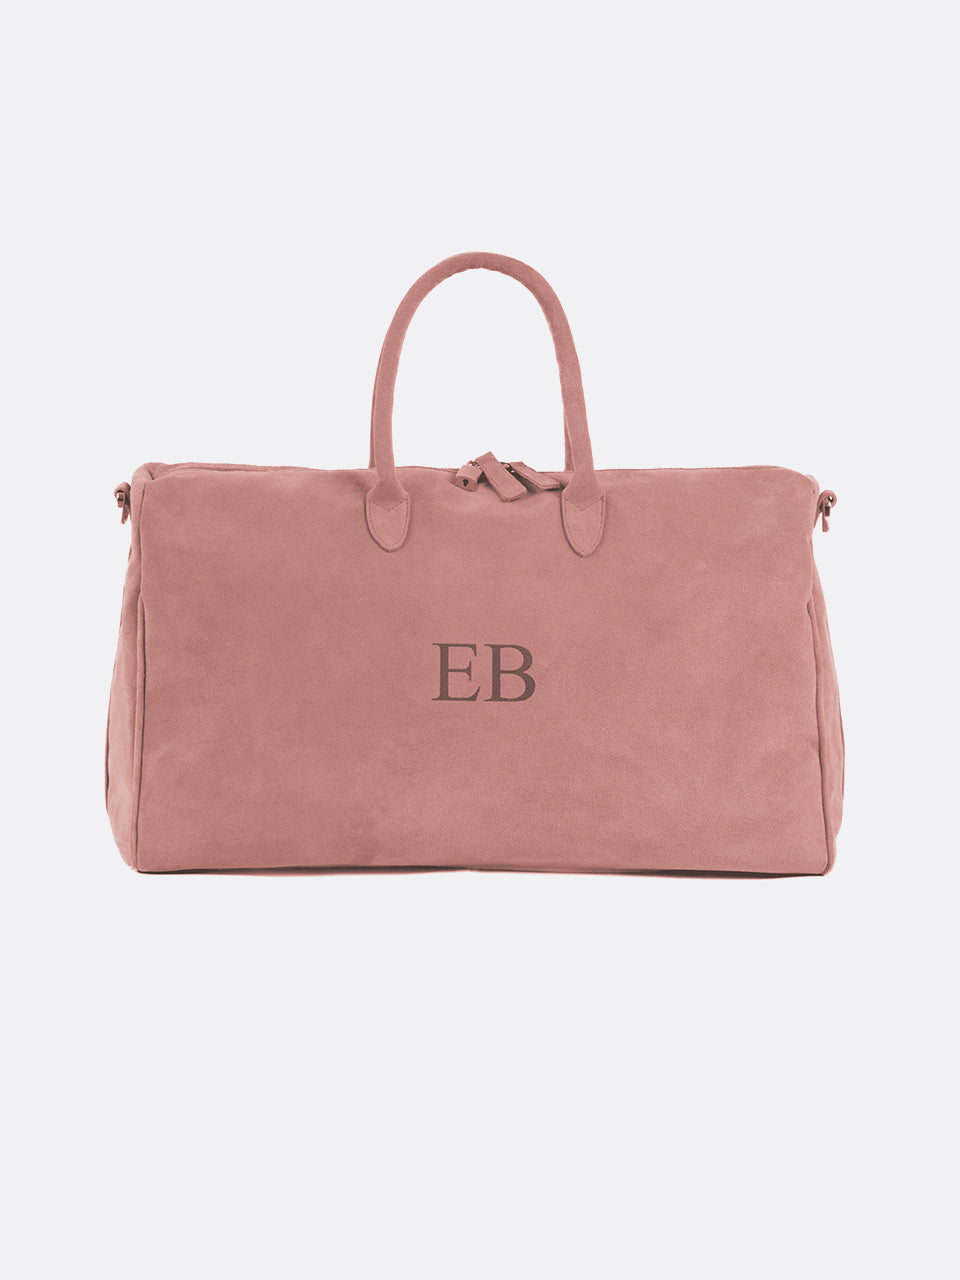 Italian Suede Leather Weekender Travel Bag - Dusky Pink - 13